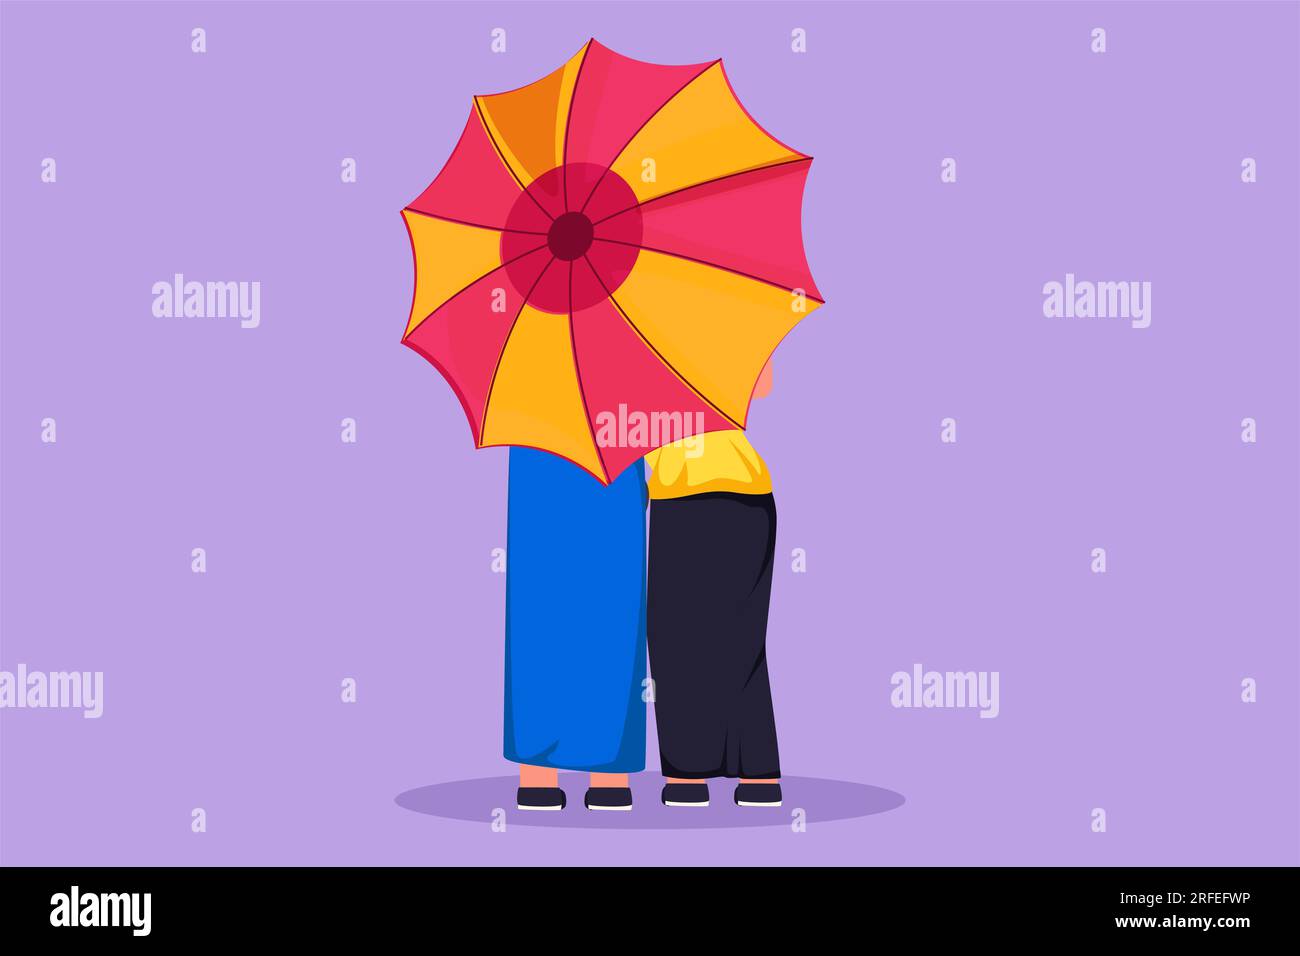 Descarga Ilustración de una niña con paraguas bajo la lluvia en la luna PNG  En Línea - Creative Fabrica